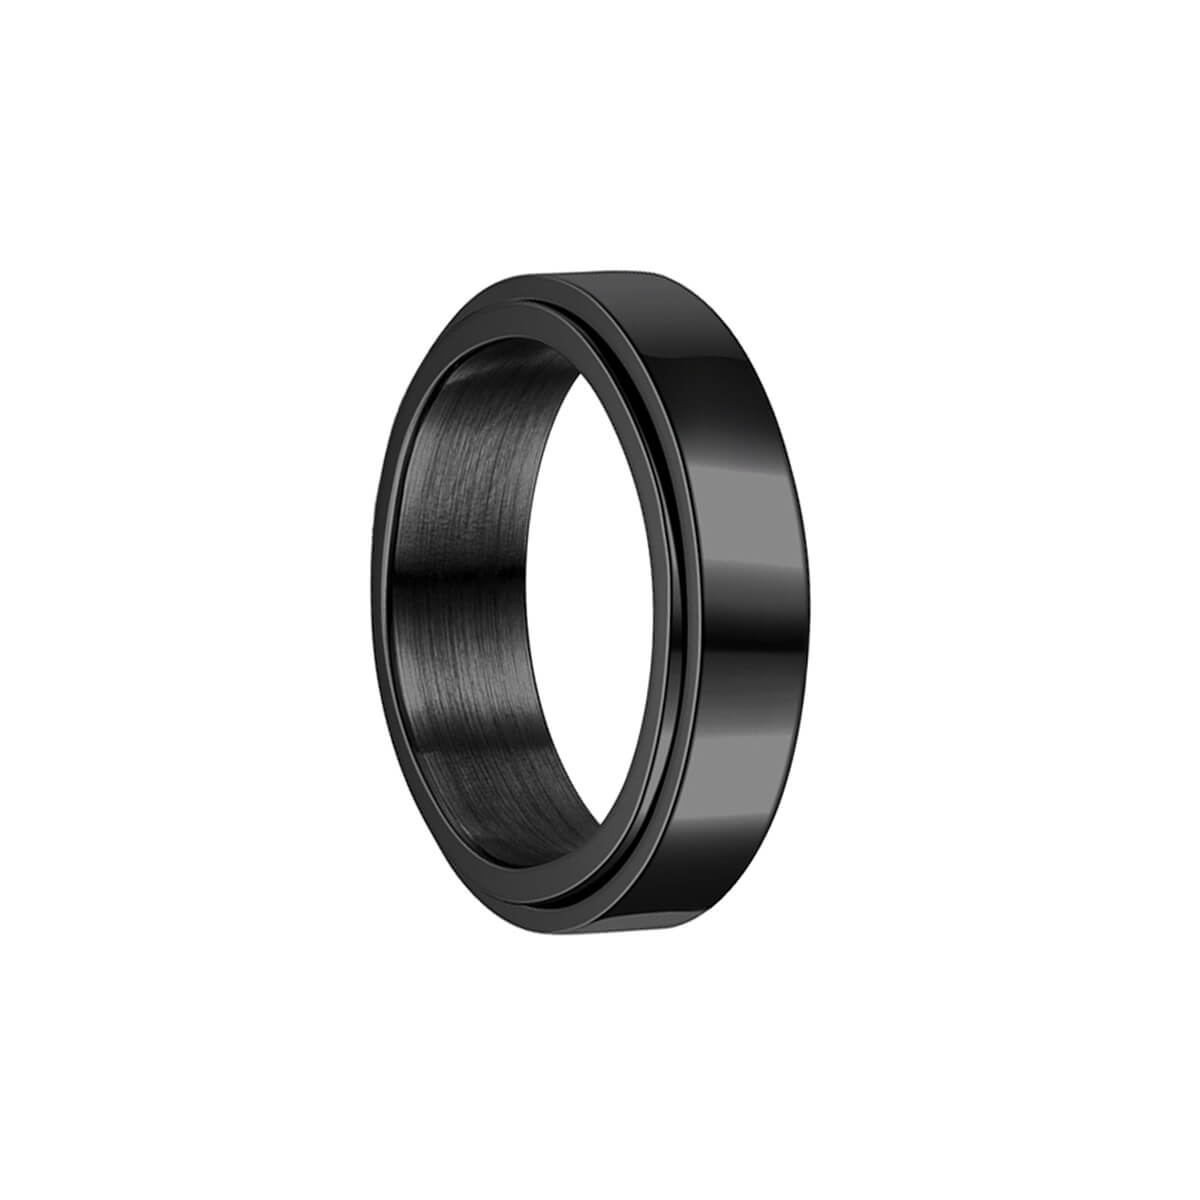 Black Golden Spinning Spinner Ring (Steel)